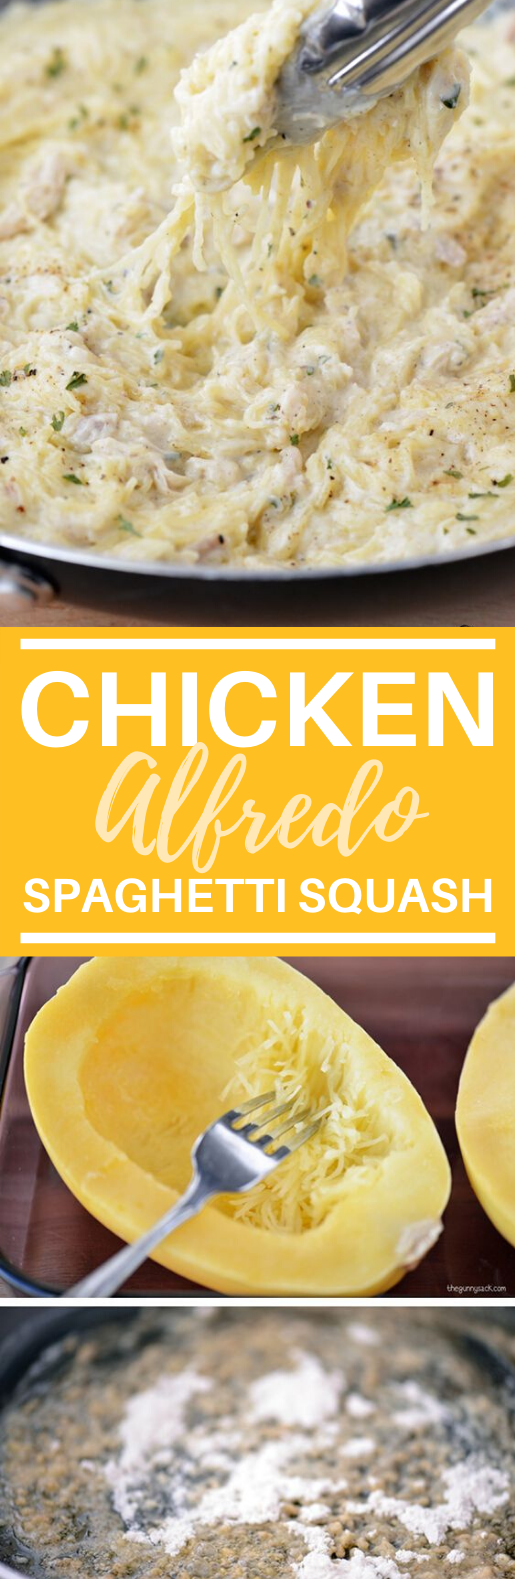 Chicken Alfredo Spaghetti Squash #dinner #glutenfree #healthy #comfortfood #weeknight